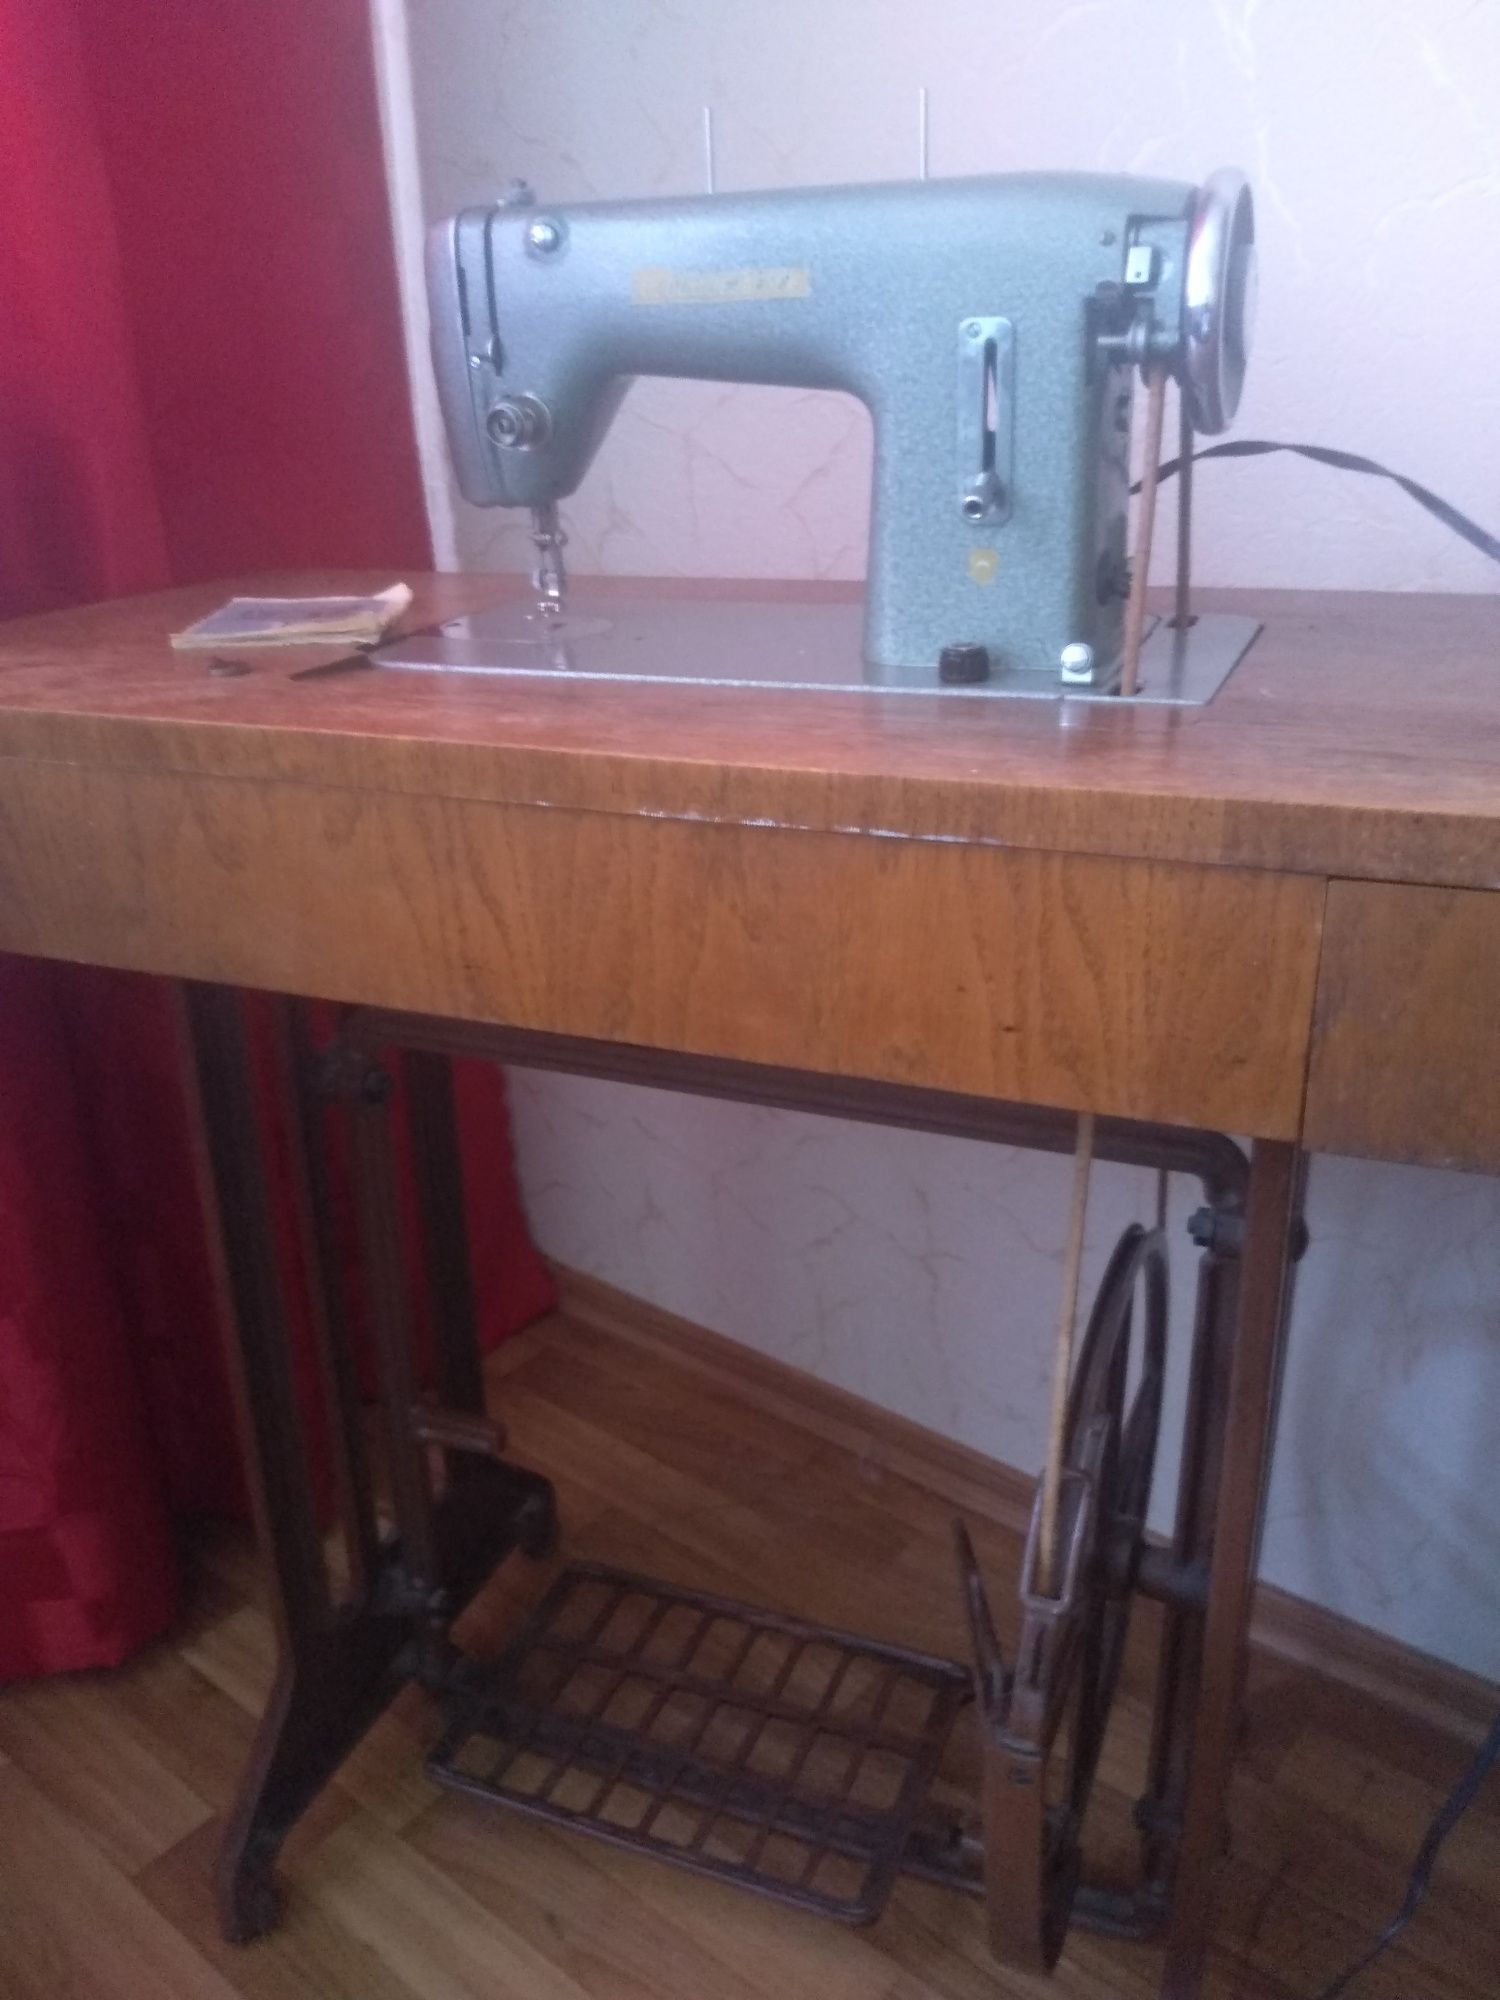 Швейная машина Minerva 124 советского периода